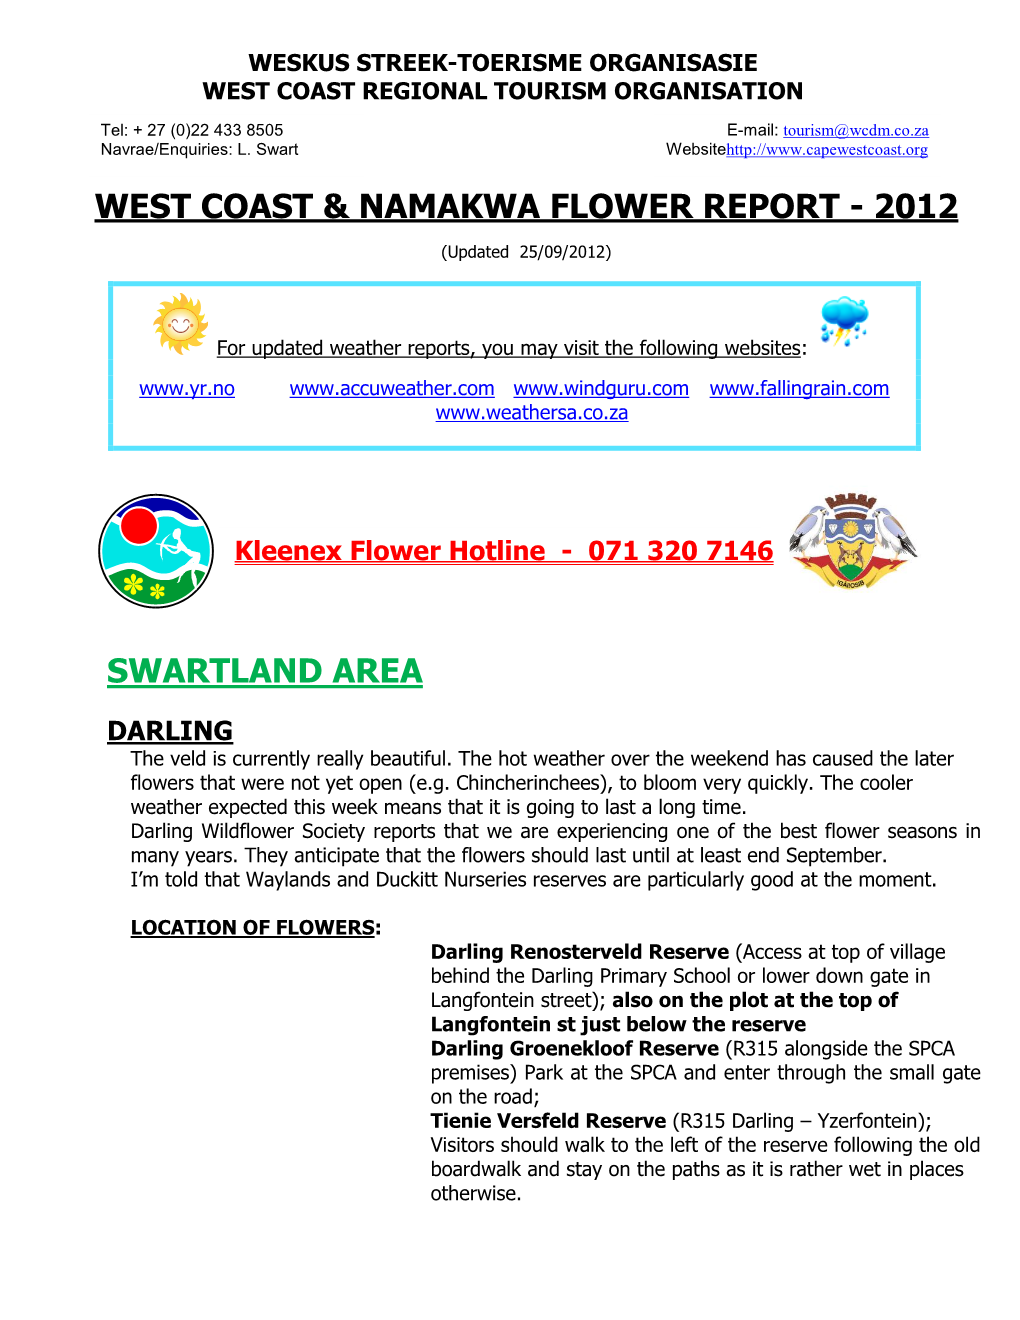 West Coast & Namakwa Flower Report